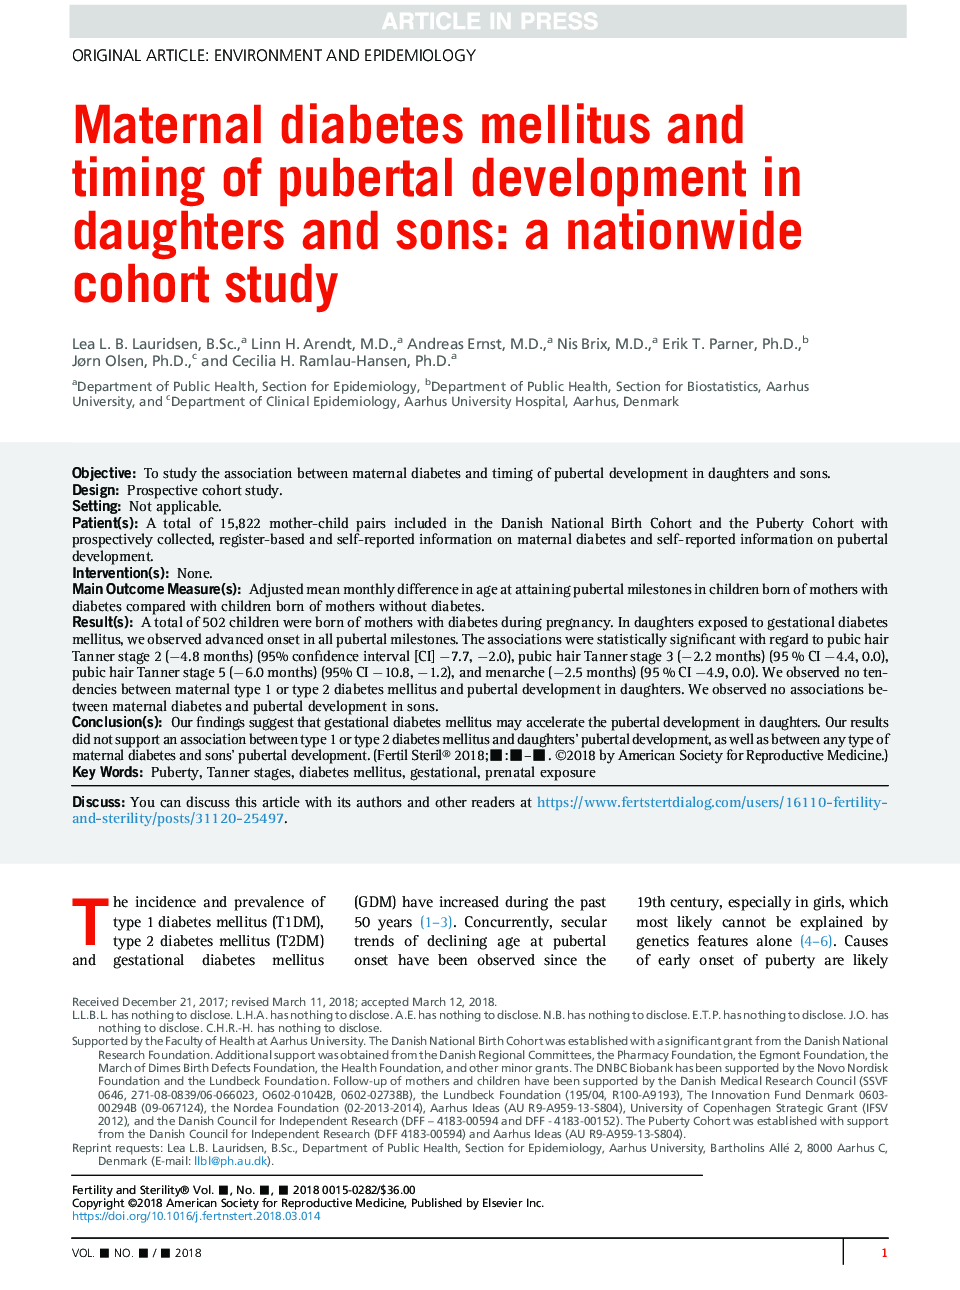 دیابت شیر ​​مادر و زمان رشد بلوغ در دختران و پسران: یک مطالعه همگروه در سراسر کشور 